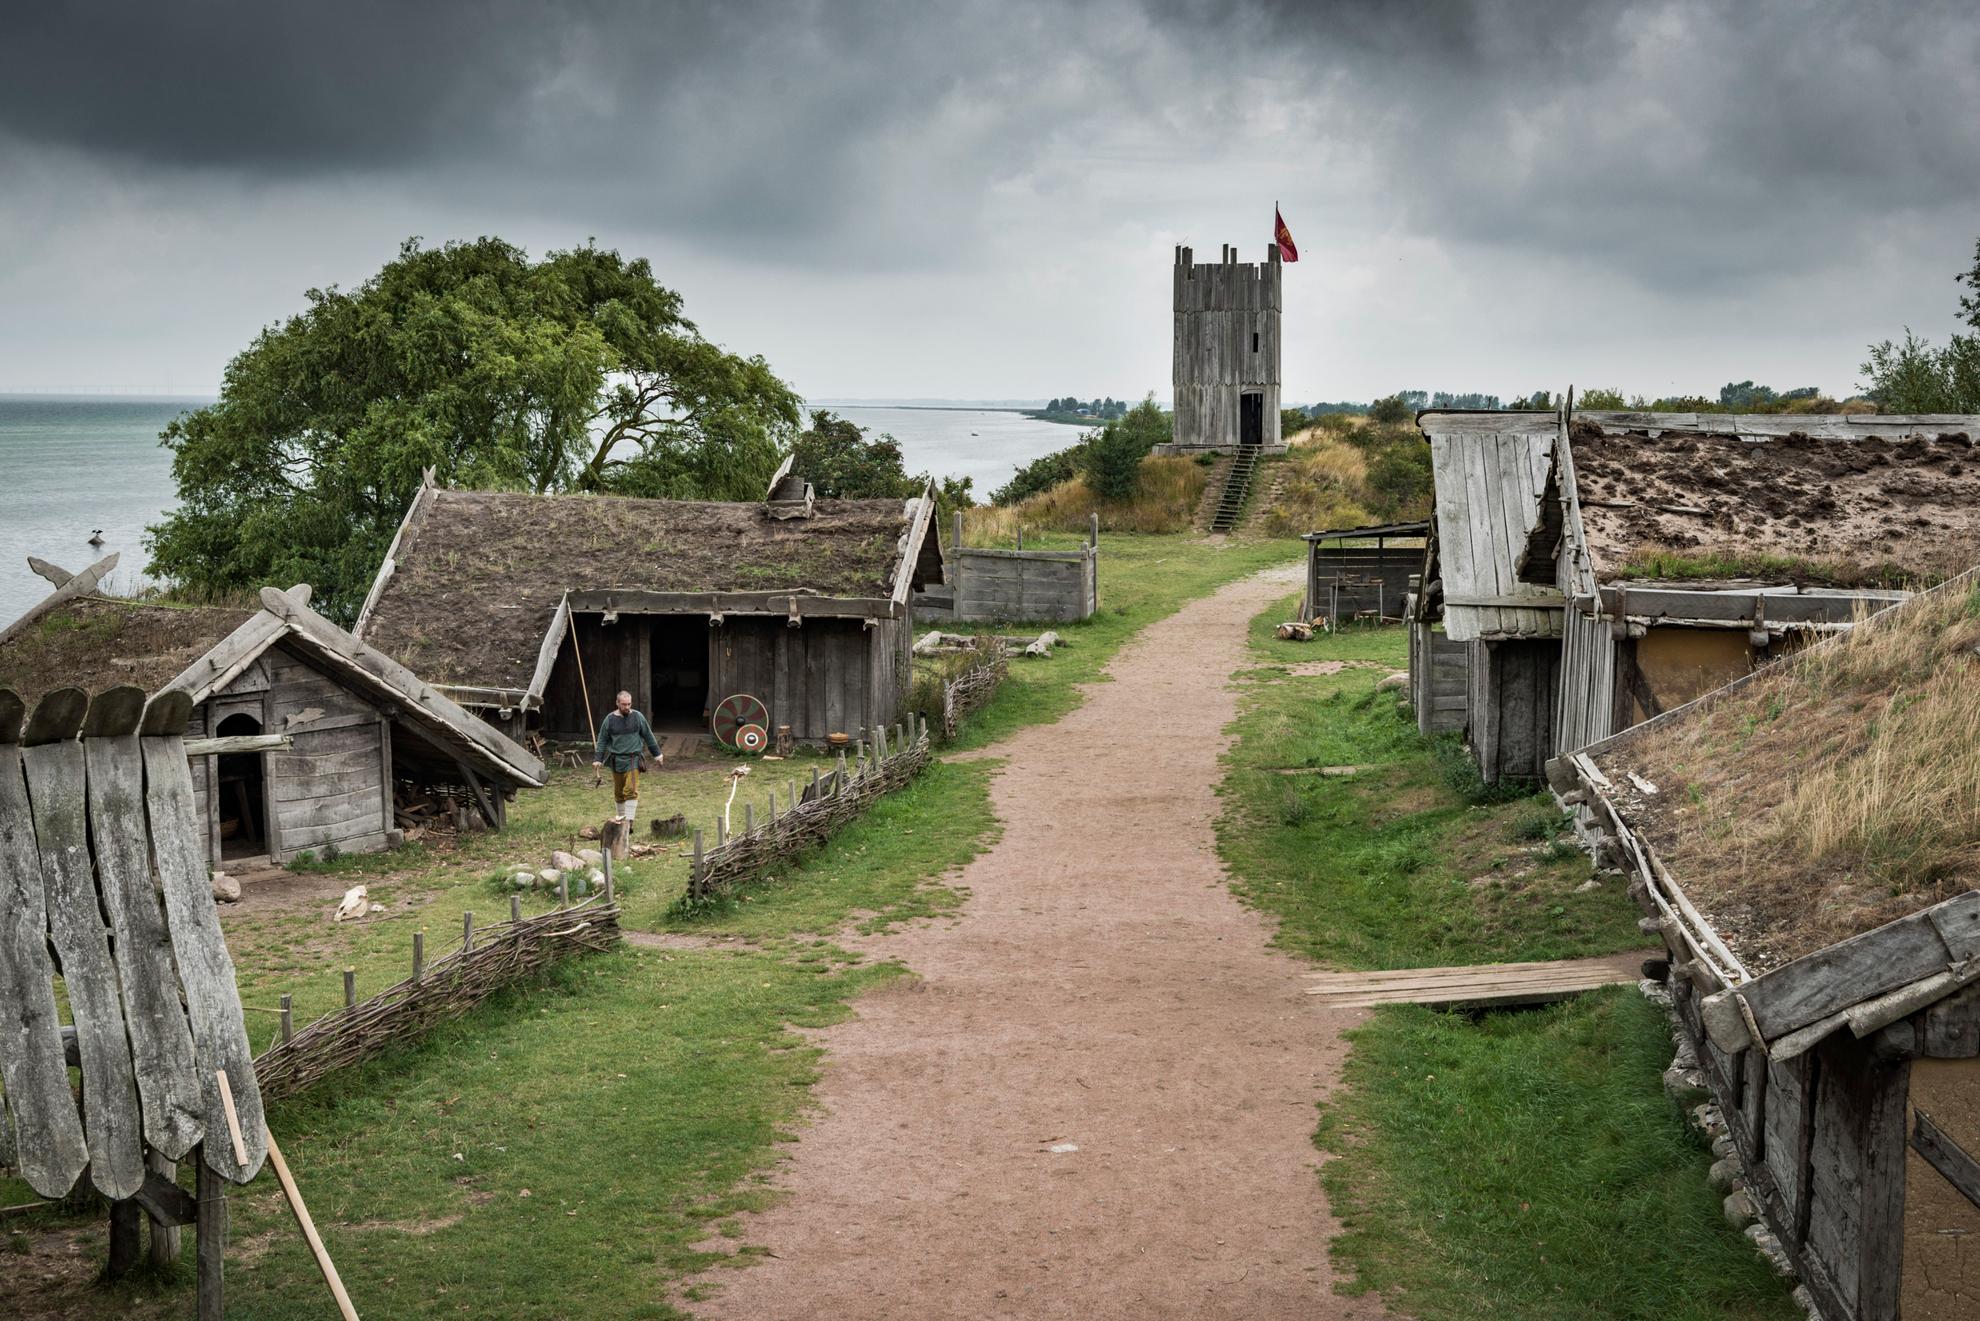 Un chemin traversant un village viking traditionnel avec des maisons en bois aux toits recouverts d'herbe.